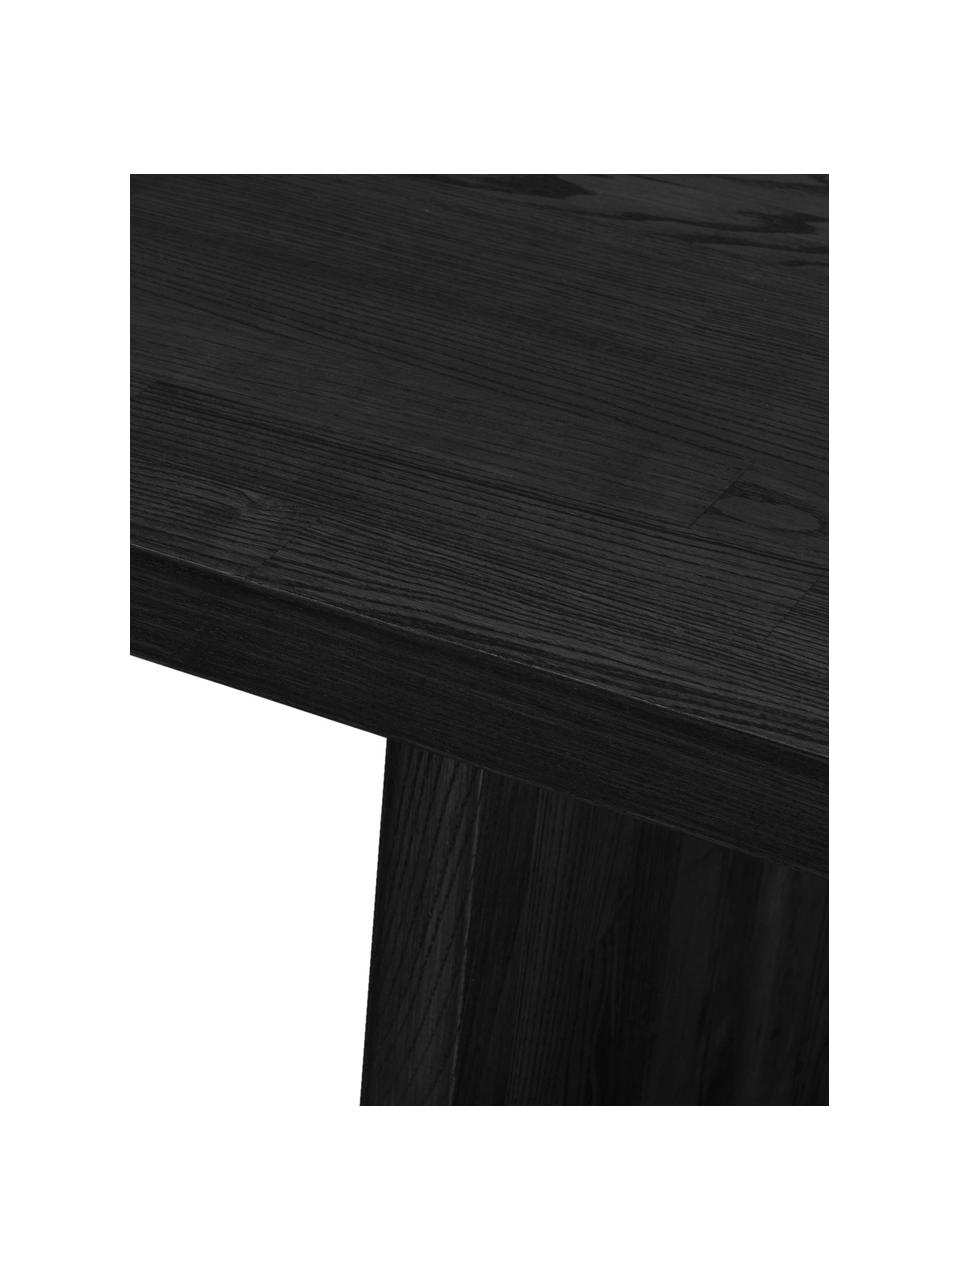 Eettafel Emmett van essenhout in zwart, 240 x 95 cm, Massief gelakt essenhout, FSC-gecertificeerd, Essenhout, zwart gelakt, B 240 x D 95 cm